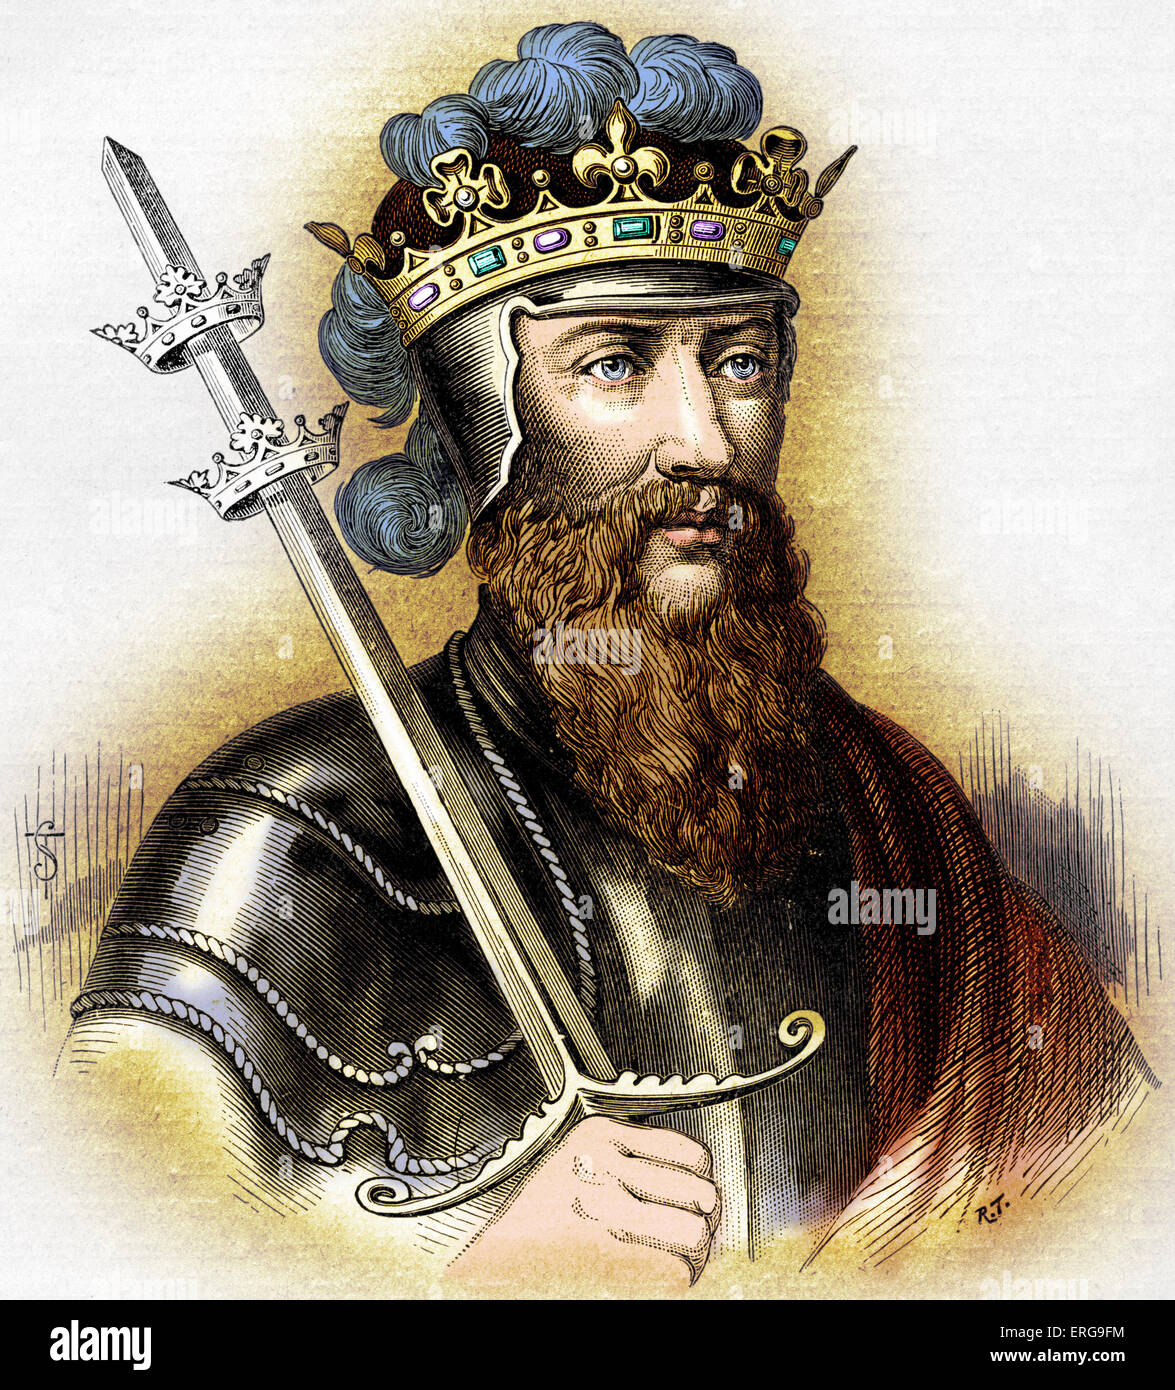 Edward III, re d'Inghilterra. Il suo regno ha visto salire di Inghilterra come efficiencet potenza militare e di sviluppo del Parlamento. 13 Foto Stock